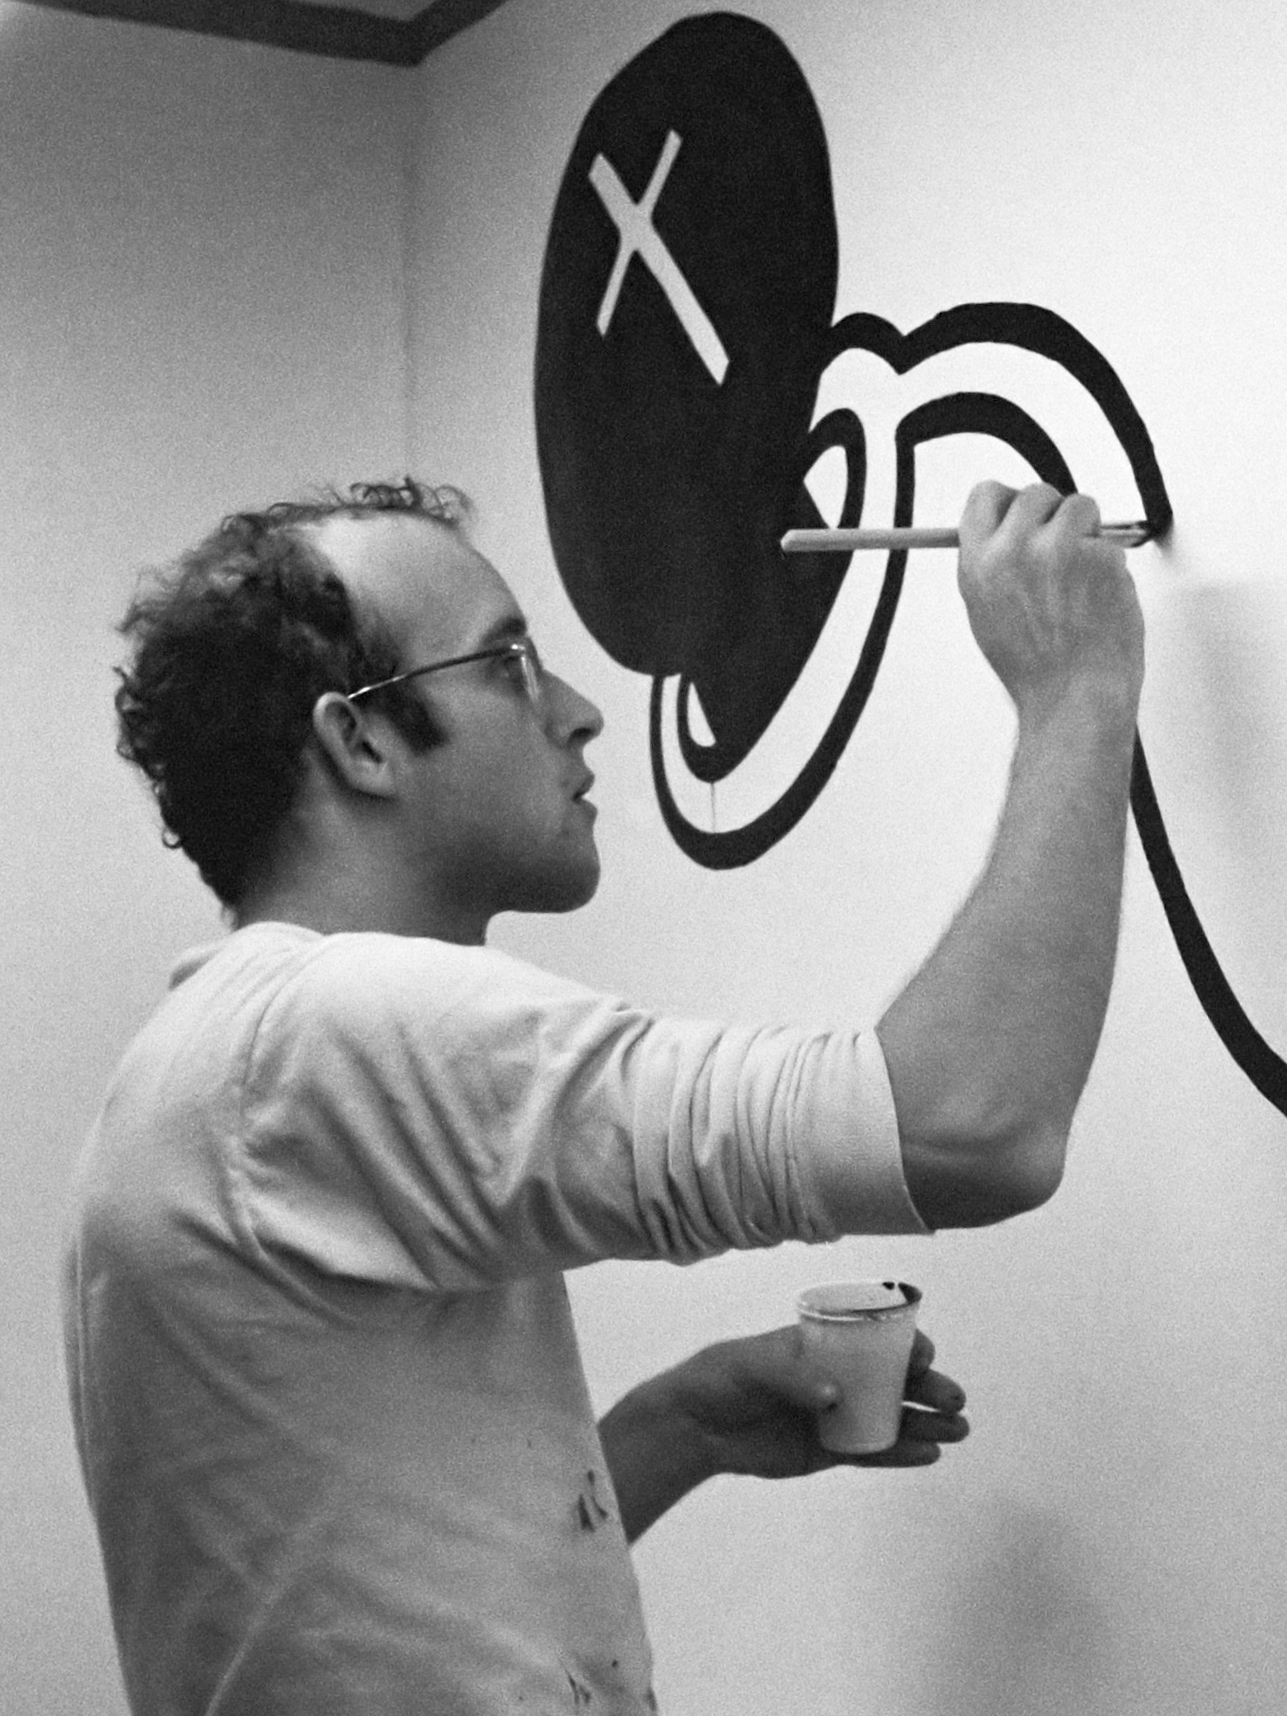 auteur Keith Haring de la citation Il y a des images que je n'utiliserai qu'une seule fois, et ne pas utiliser à nouveau parce qu'elles ne semblent pas vraiment frapper le clou juste sur la tête, mais il y en a si fort qu'ils doivent être réduits; Parfois, le simple fait de les réutiliser les rend plus forts.